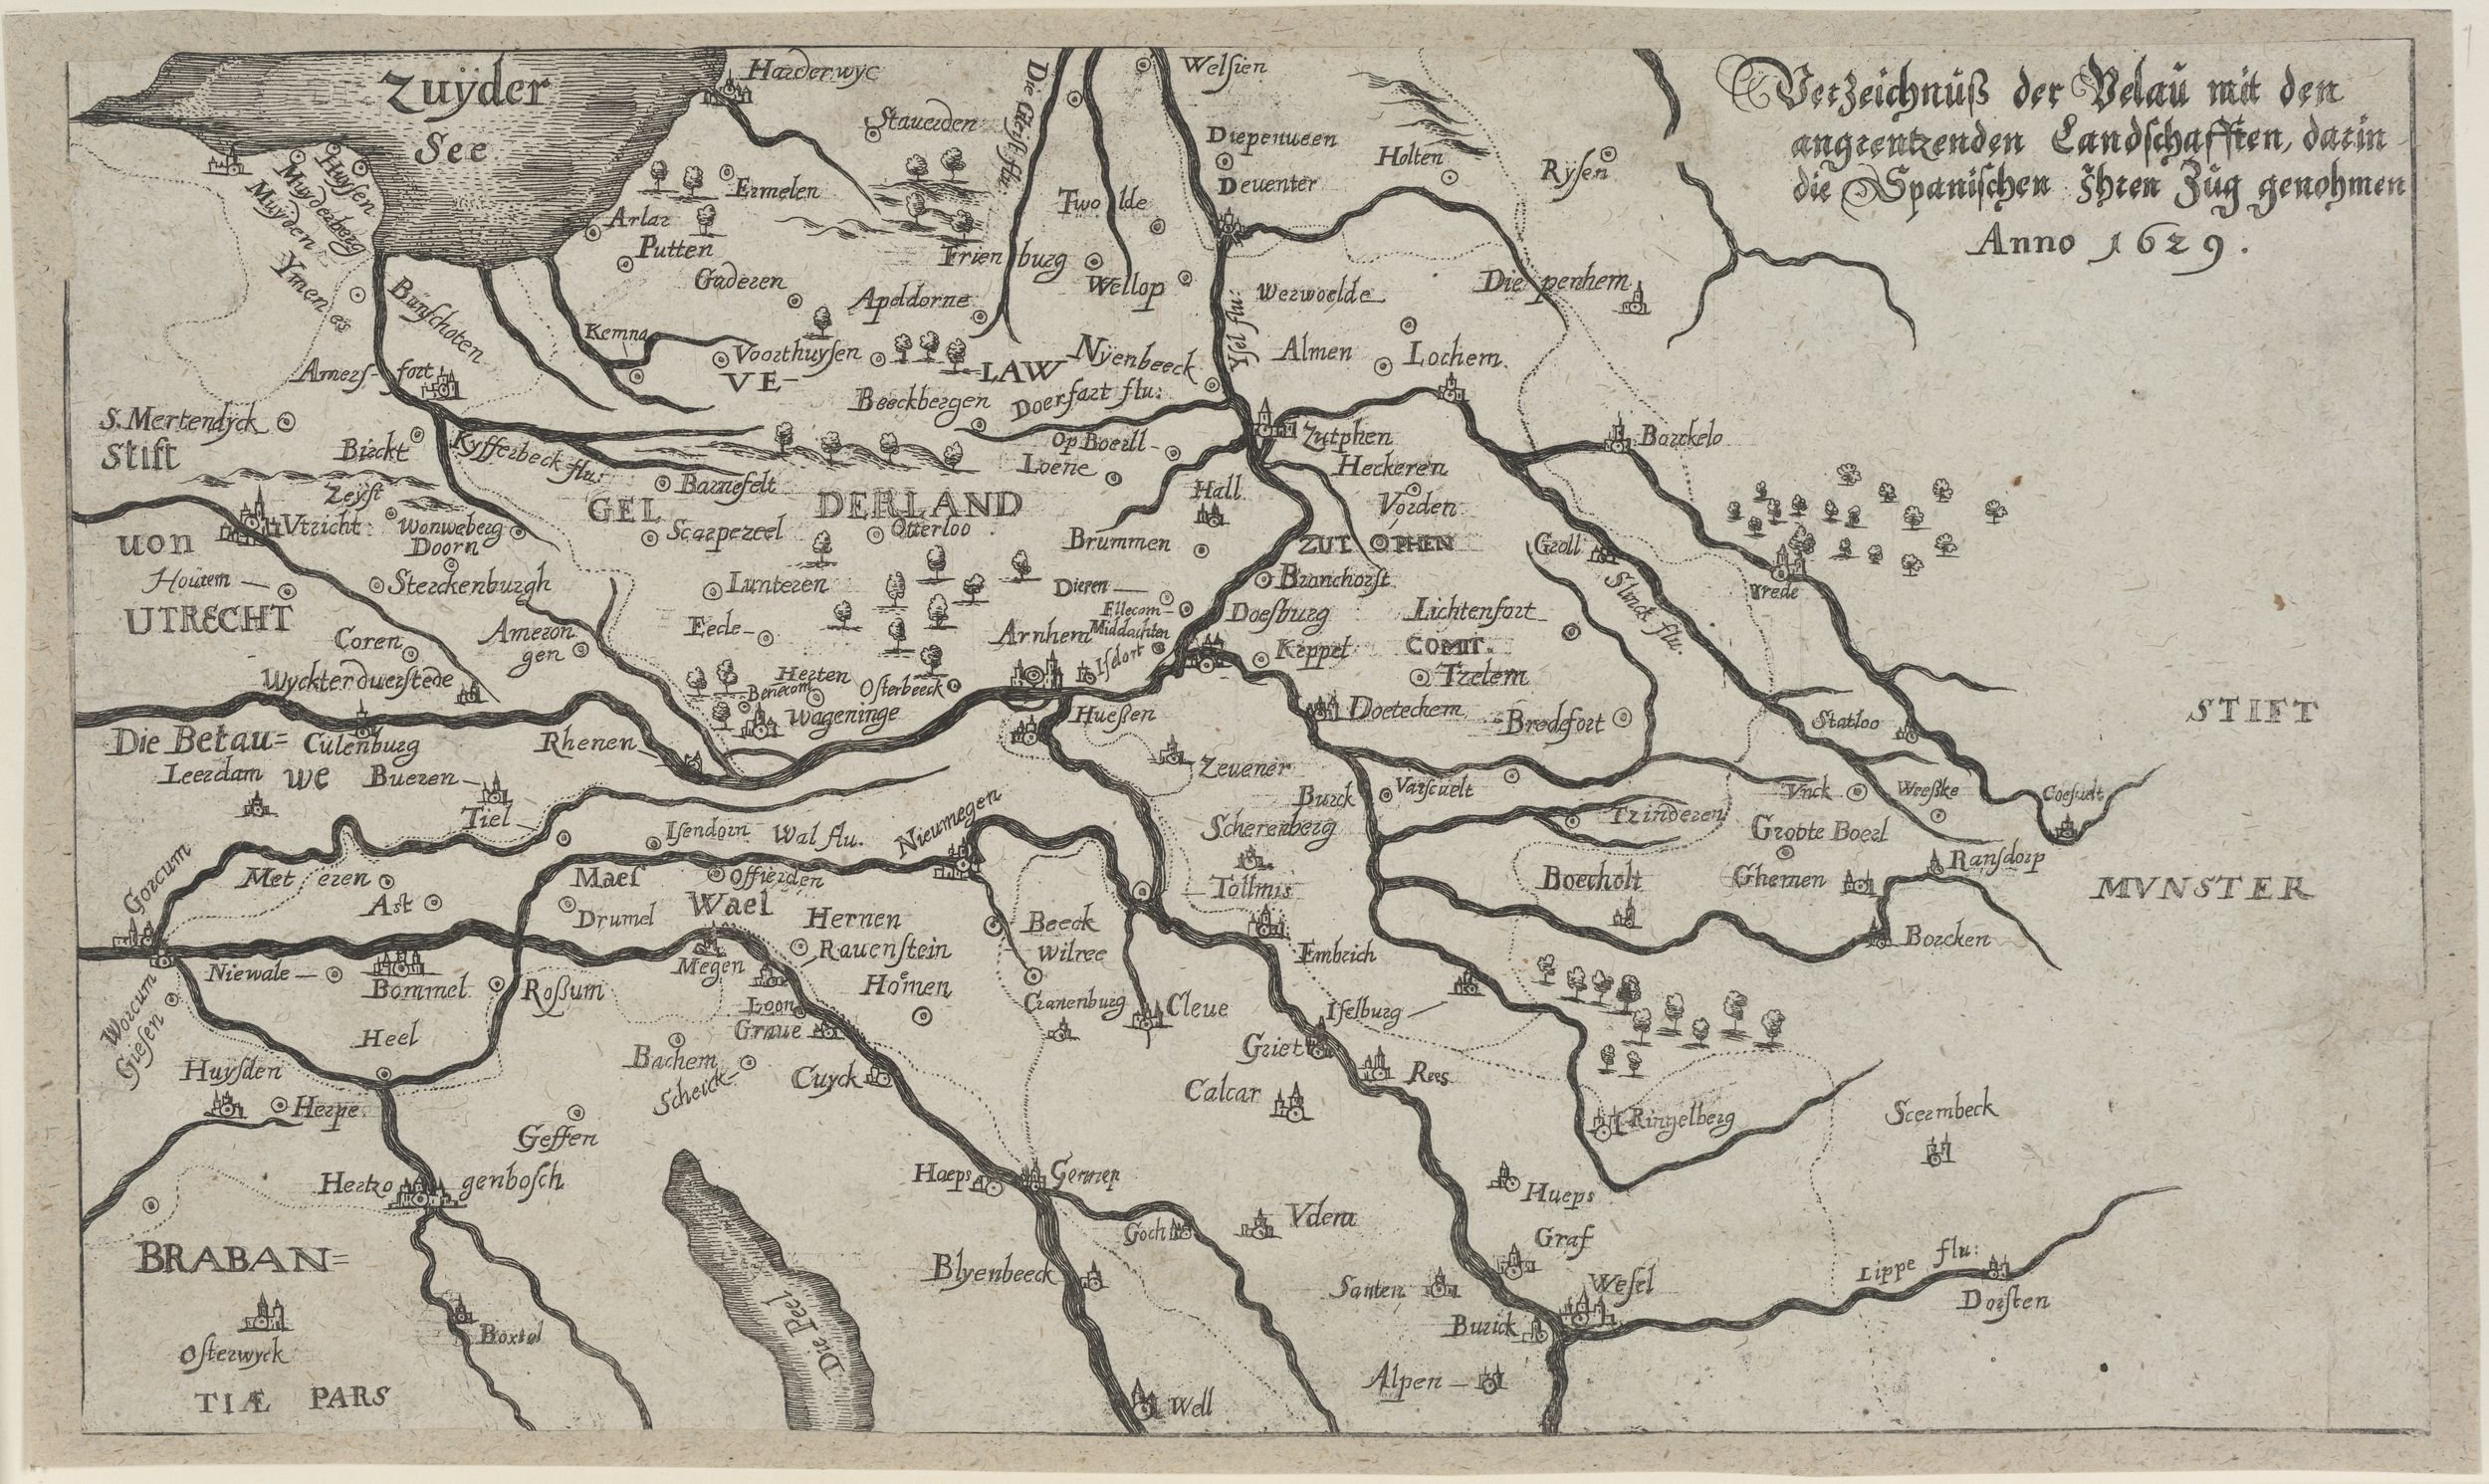 Verzeichnuß der Velau mit den/ angrentzenden Landschafften, darin/ die Spanischen ihren Zug genohmen/ Anno 1629. (Kulturstiftung Sachsen-Anhalt Public Domain Mark)